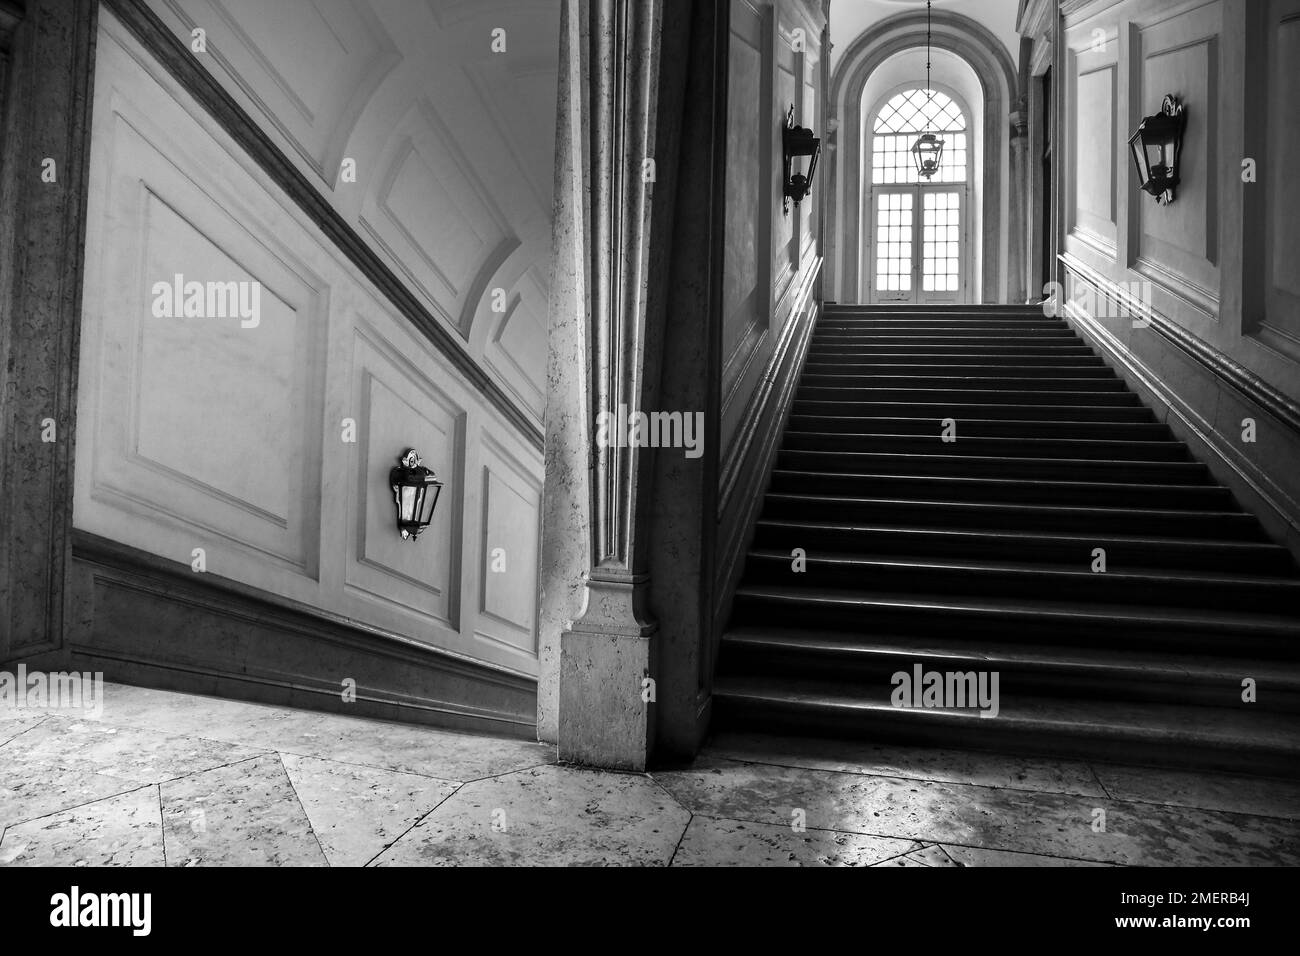 Mafra, Lisbonne, Portugal- 17 janvier 2023: Couloir, arches, Escalier en marbre et lampes du Palais - Couvent de Mafra. Image monochrome Banque D'Images